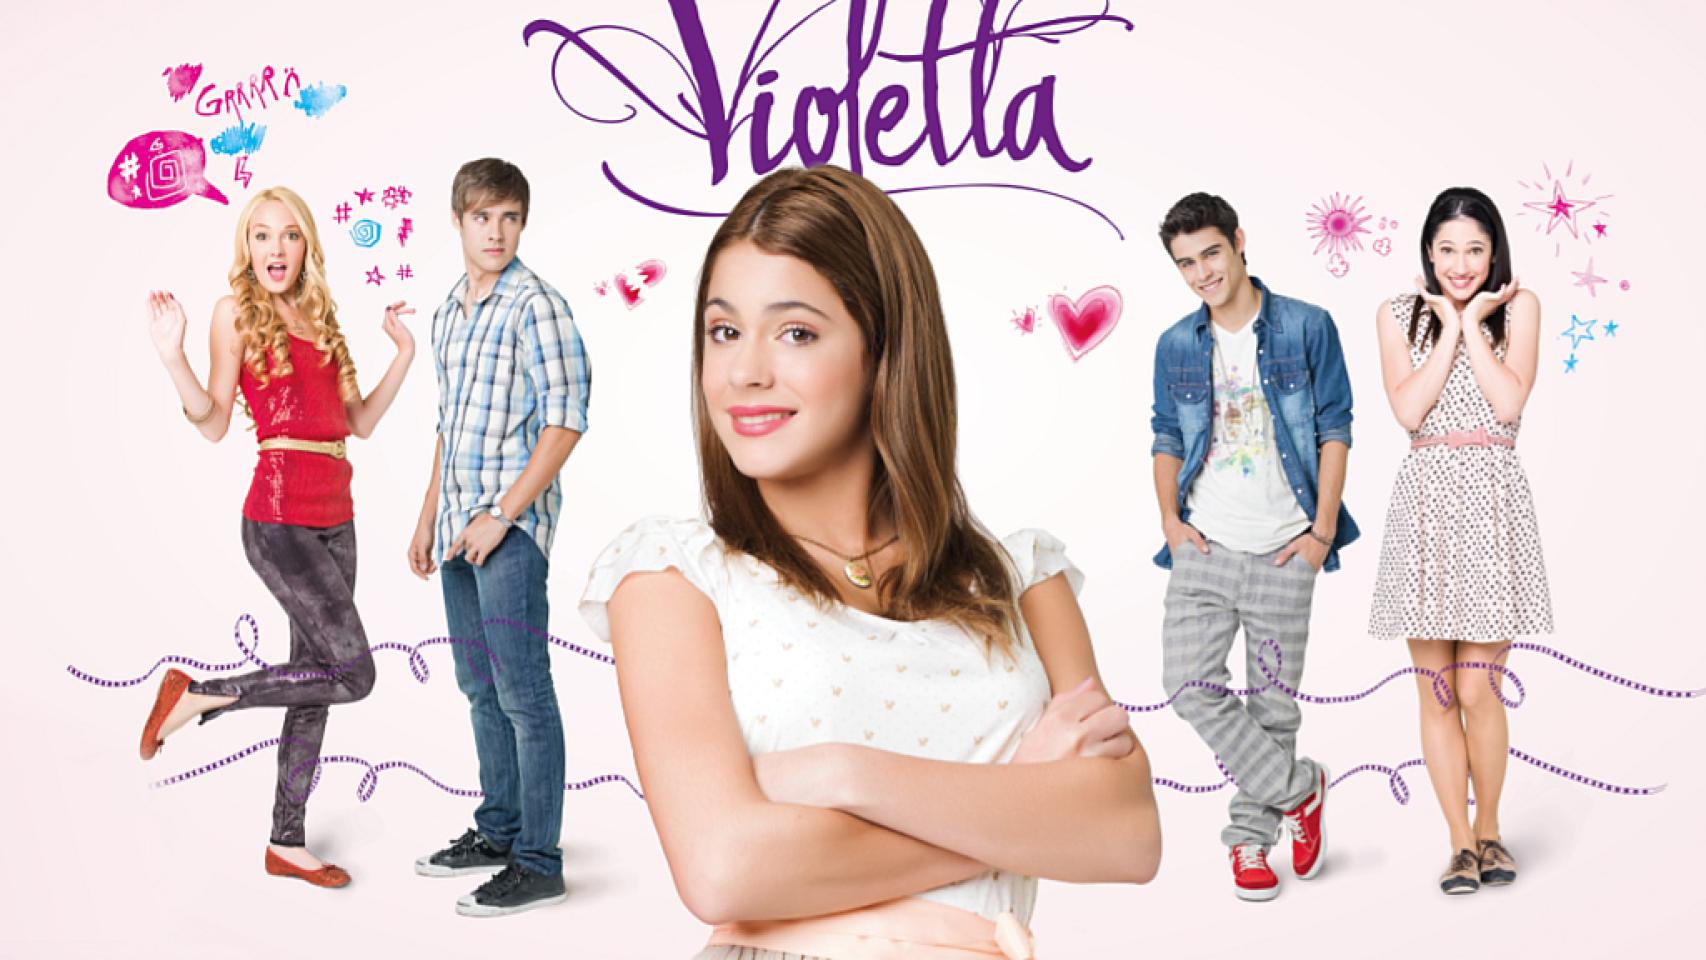 Disney Channel echa de menos a 'Violetta': caída de audiencia e ingresos